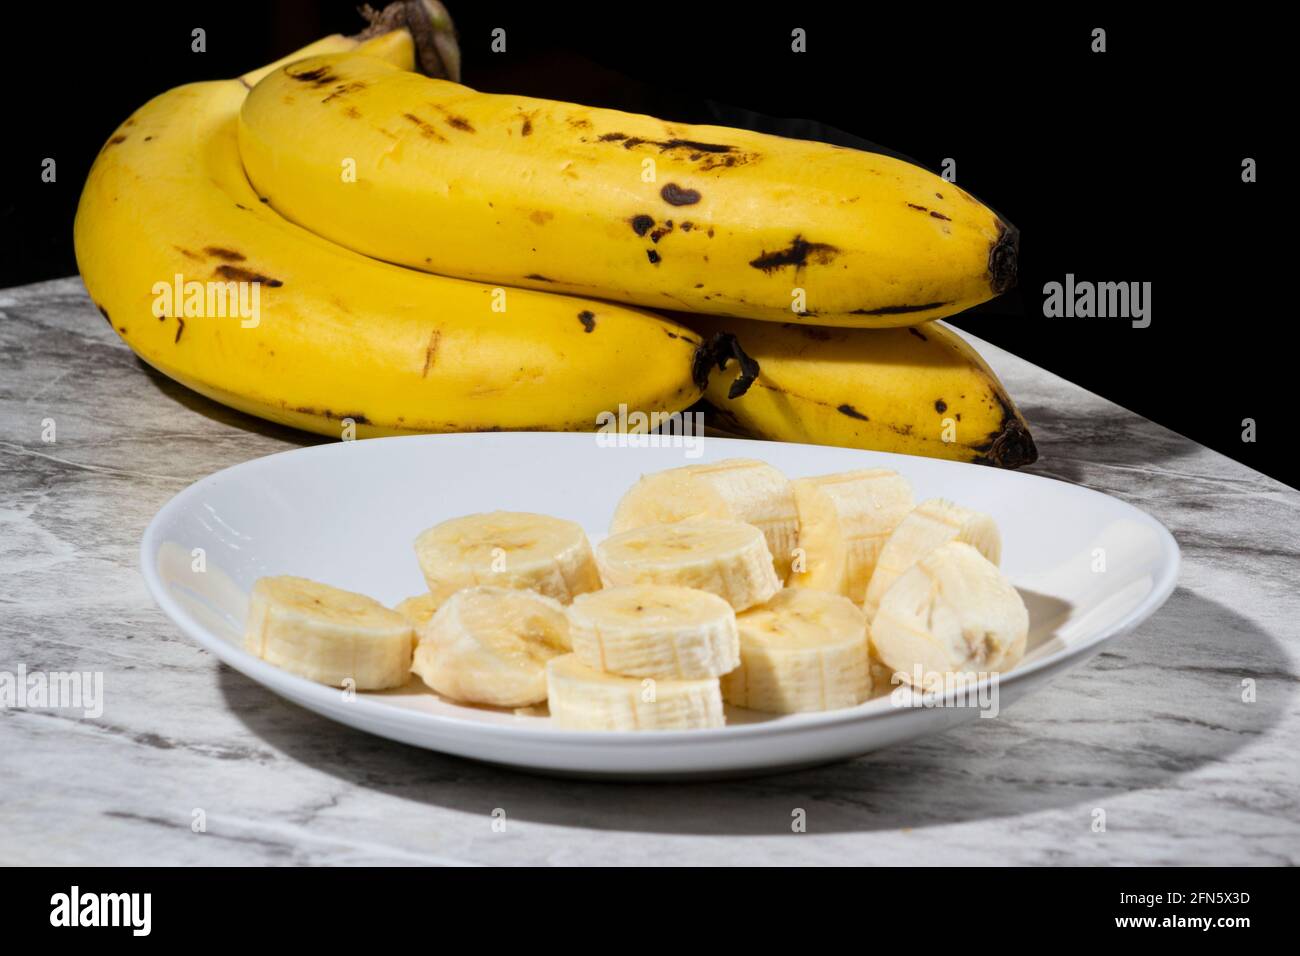 Un bouquet de bananes et une banane en tranches sur une assiette sur une table. Mise au point sélective. Banque D'Images